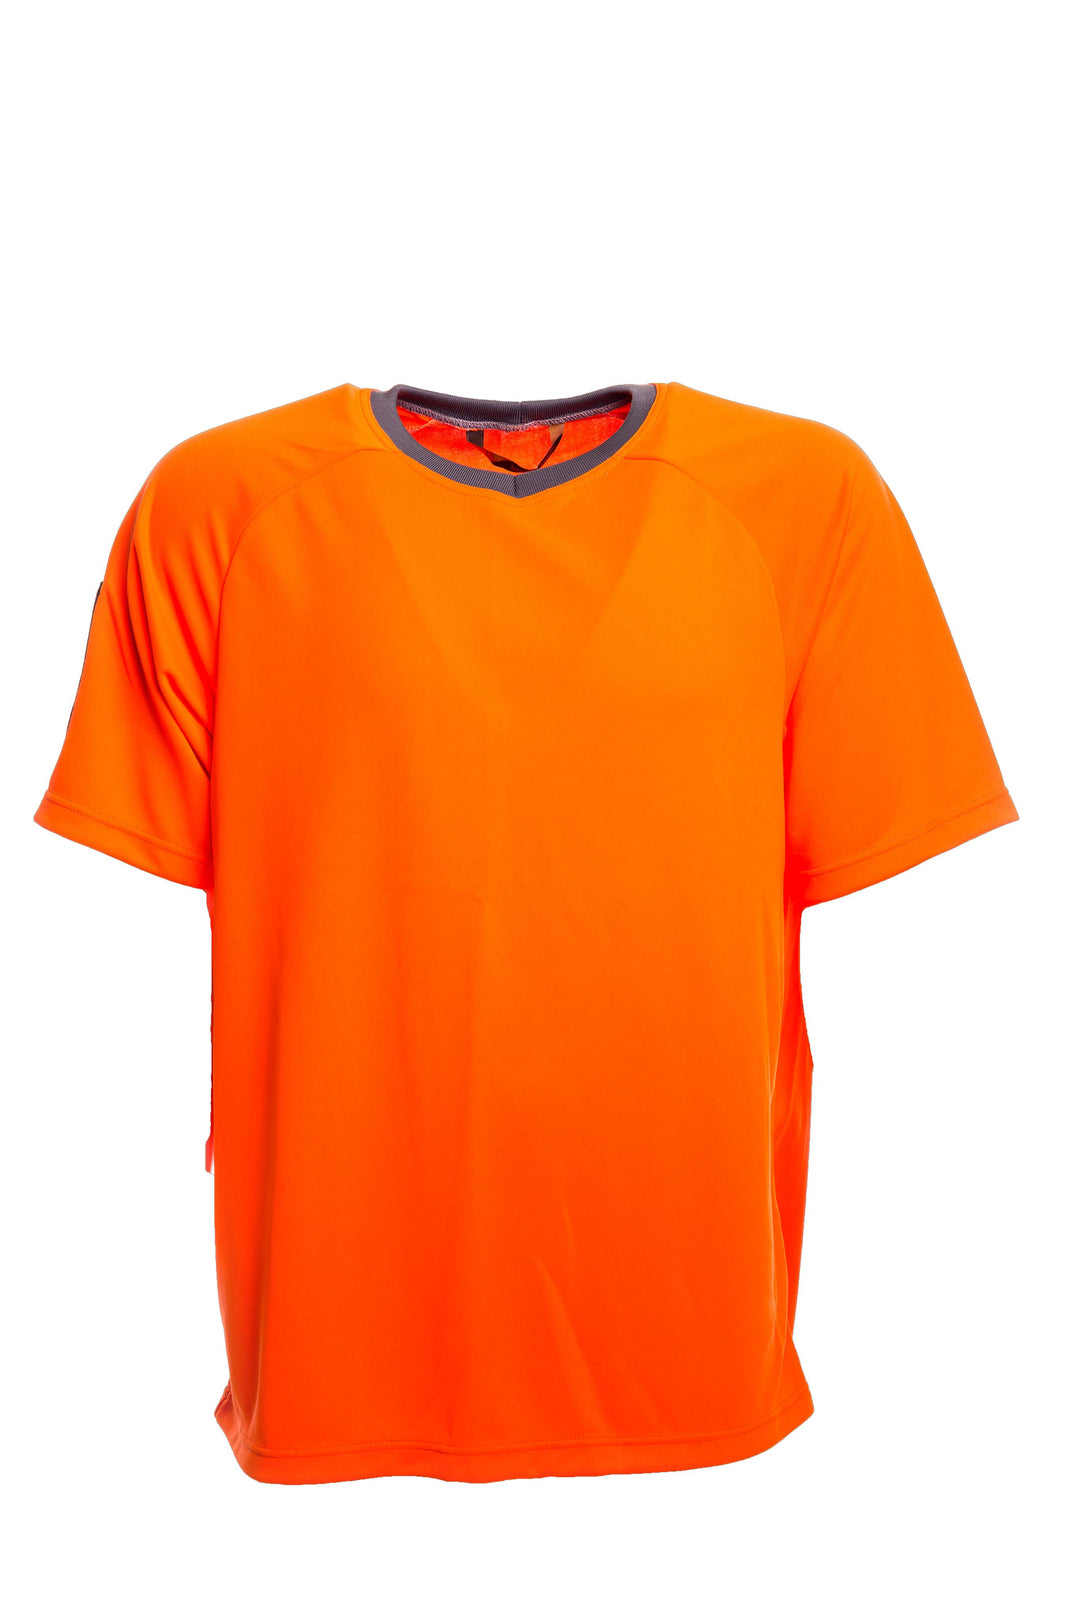 Hengittävästä ja kosteutta iholta siirtävästä Coolmax-neuloksesta valmistettu oranssi lyhythihainen T-paita. Henkilökorttitasku oikeassa hihassa.